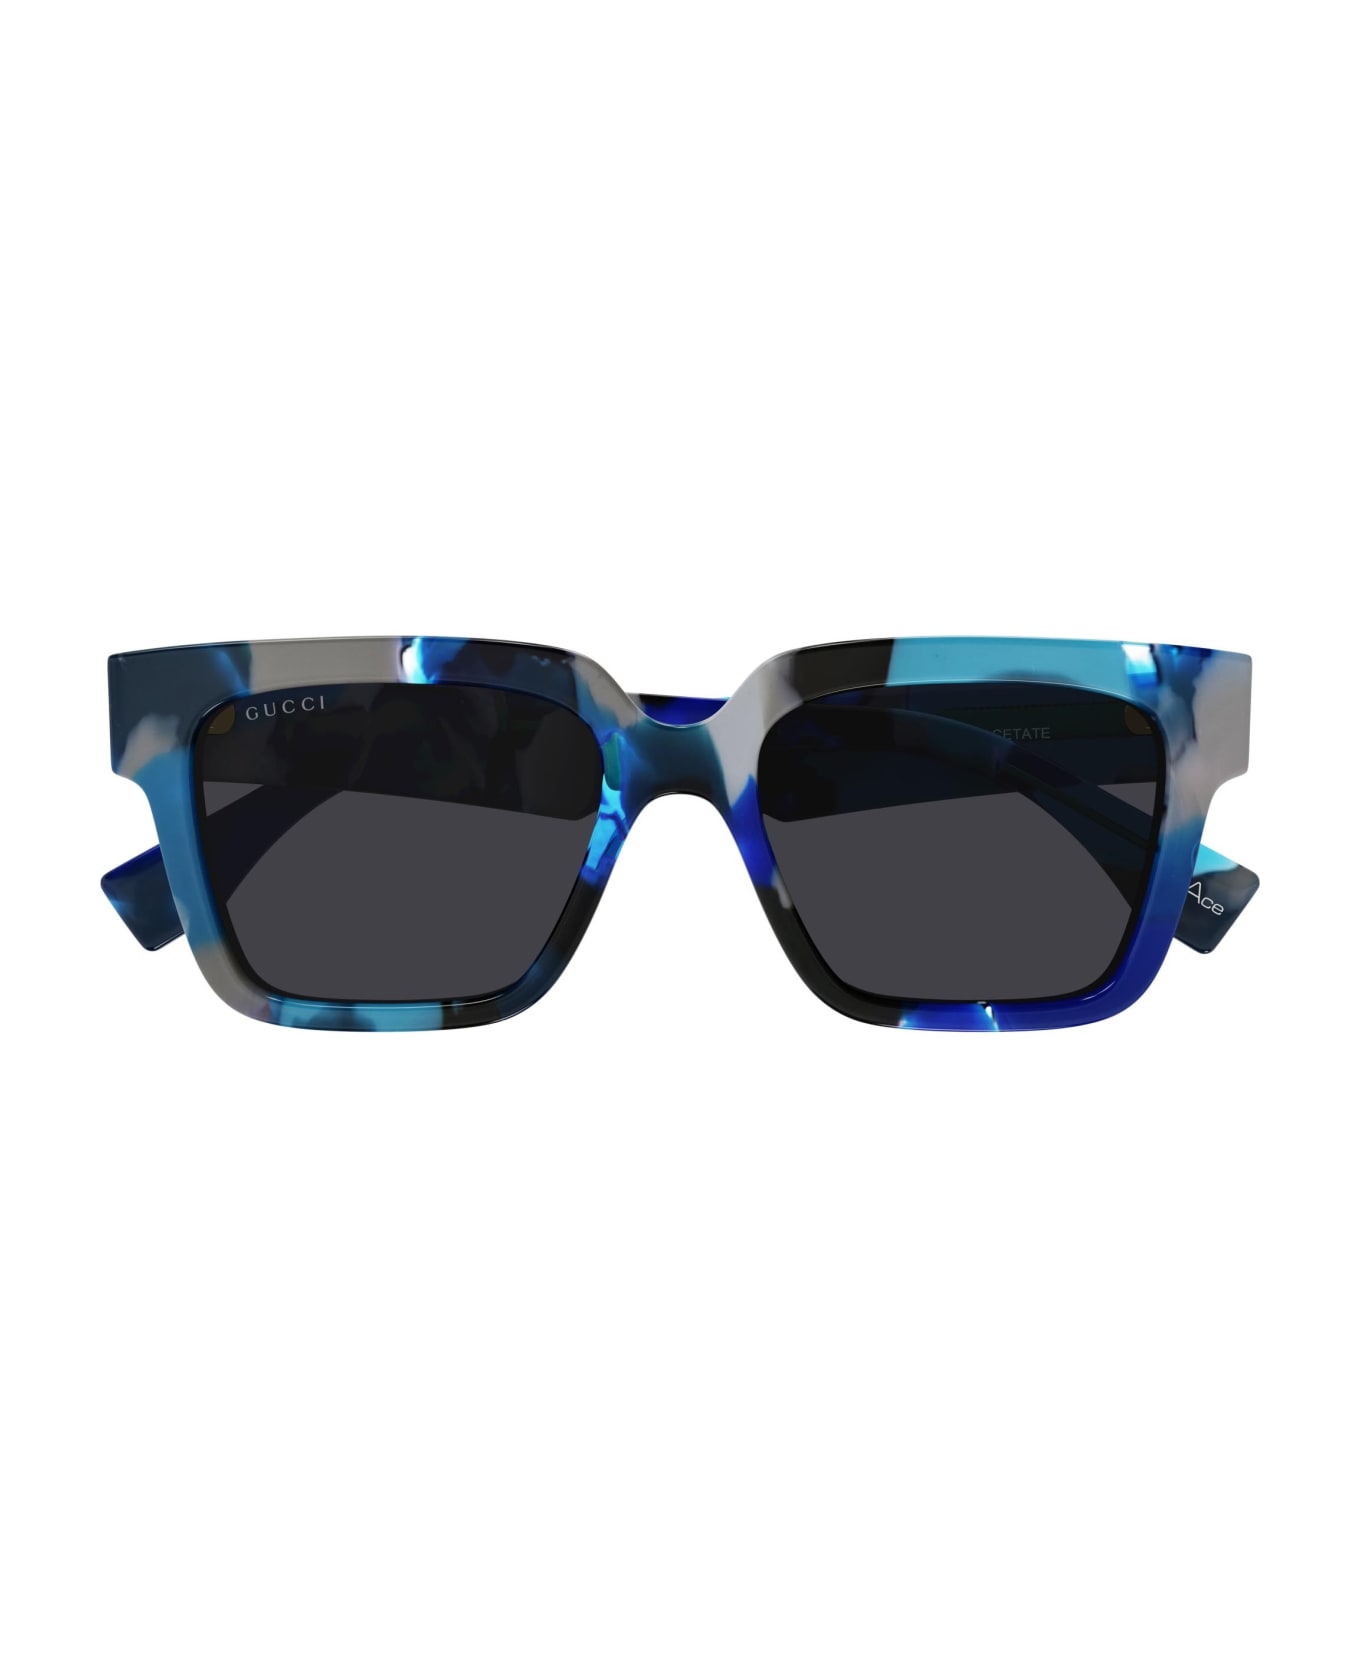 Gucci Eyewear Sunglasses - Blu/Grigio